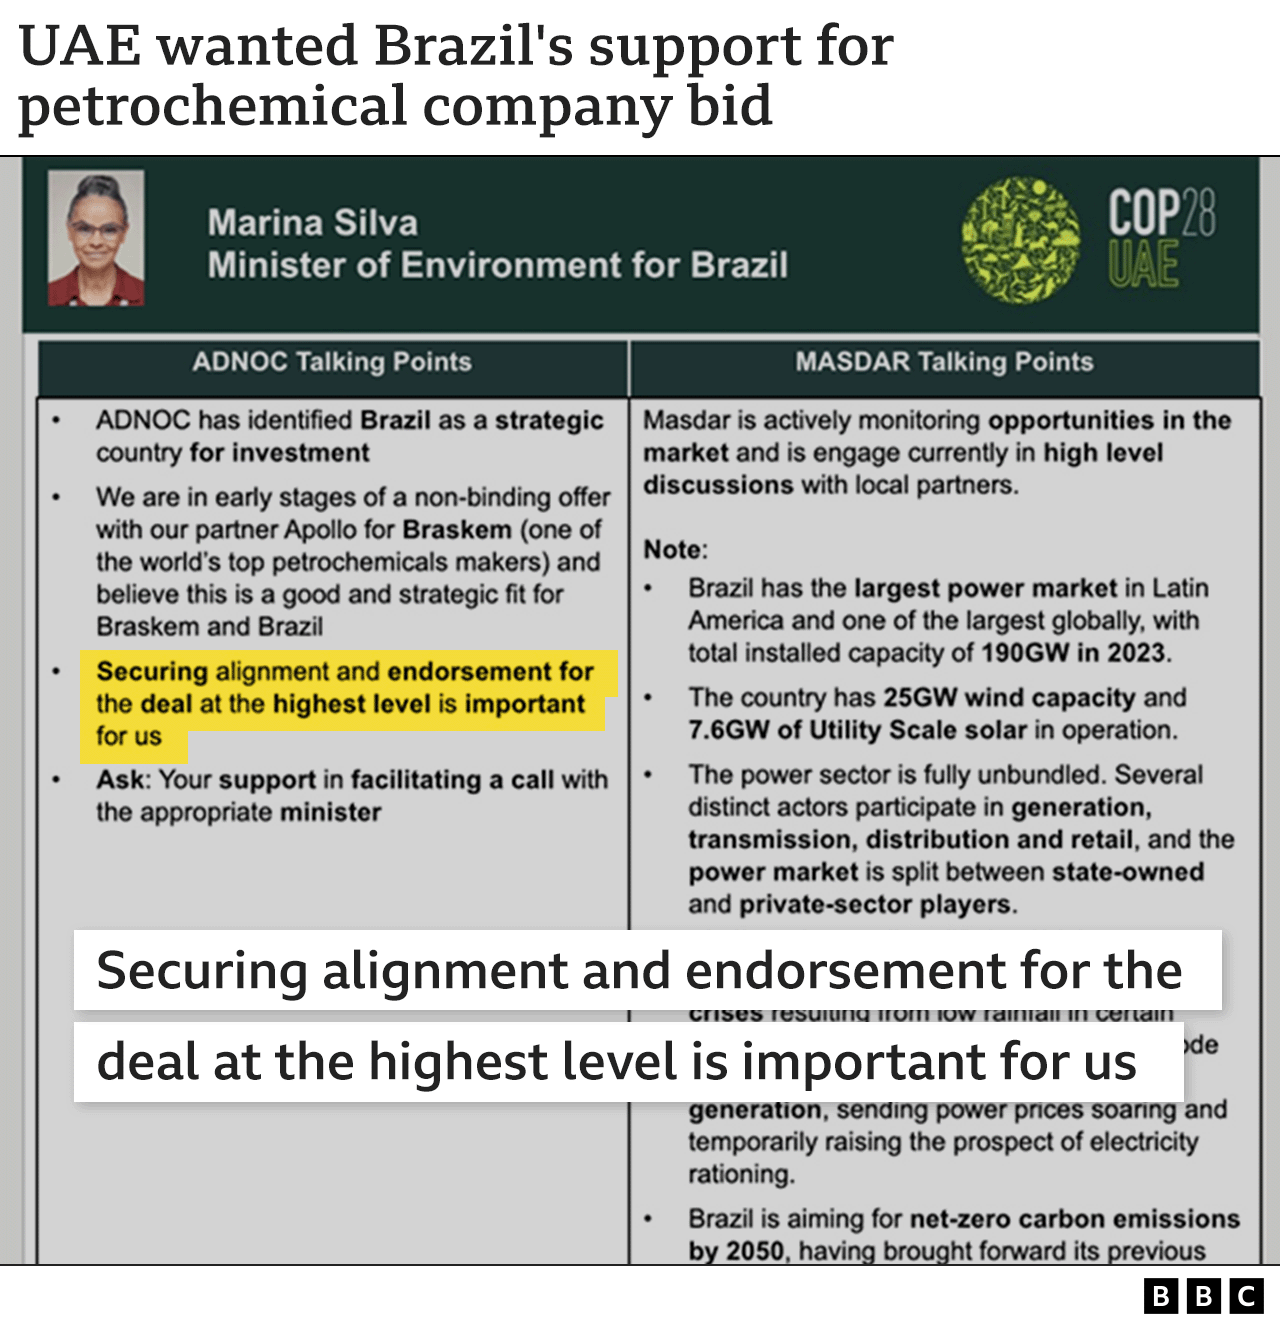 Gráfico que muestra una cita de un documento informativo para la reunión del equipo de la COP28 de los Emiratos Árabes Unidos con el Ministro de Medio Ambiente de Brasil, que menciona el acuerdo de Braskem y dice: "Asegurar la alineación y el respaldo del acuerdo al más alto nivel es importante para nosotros".